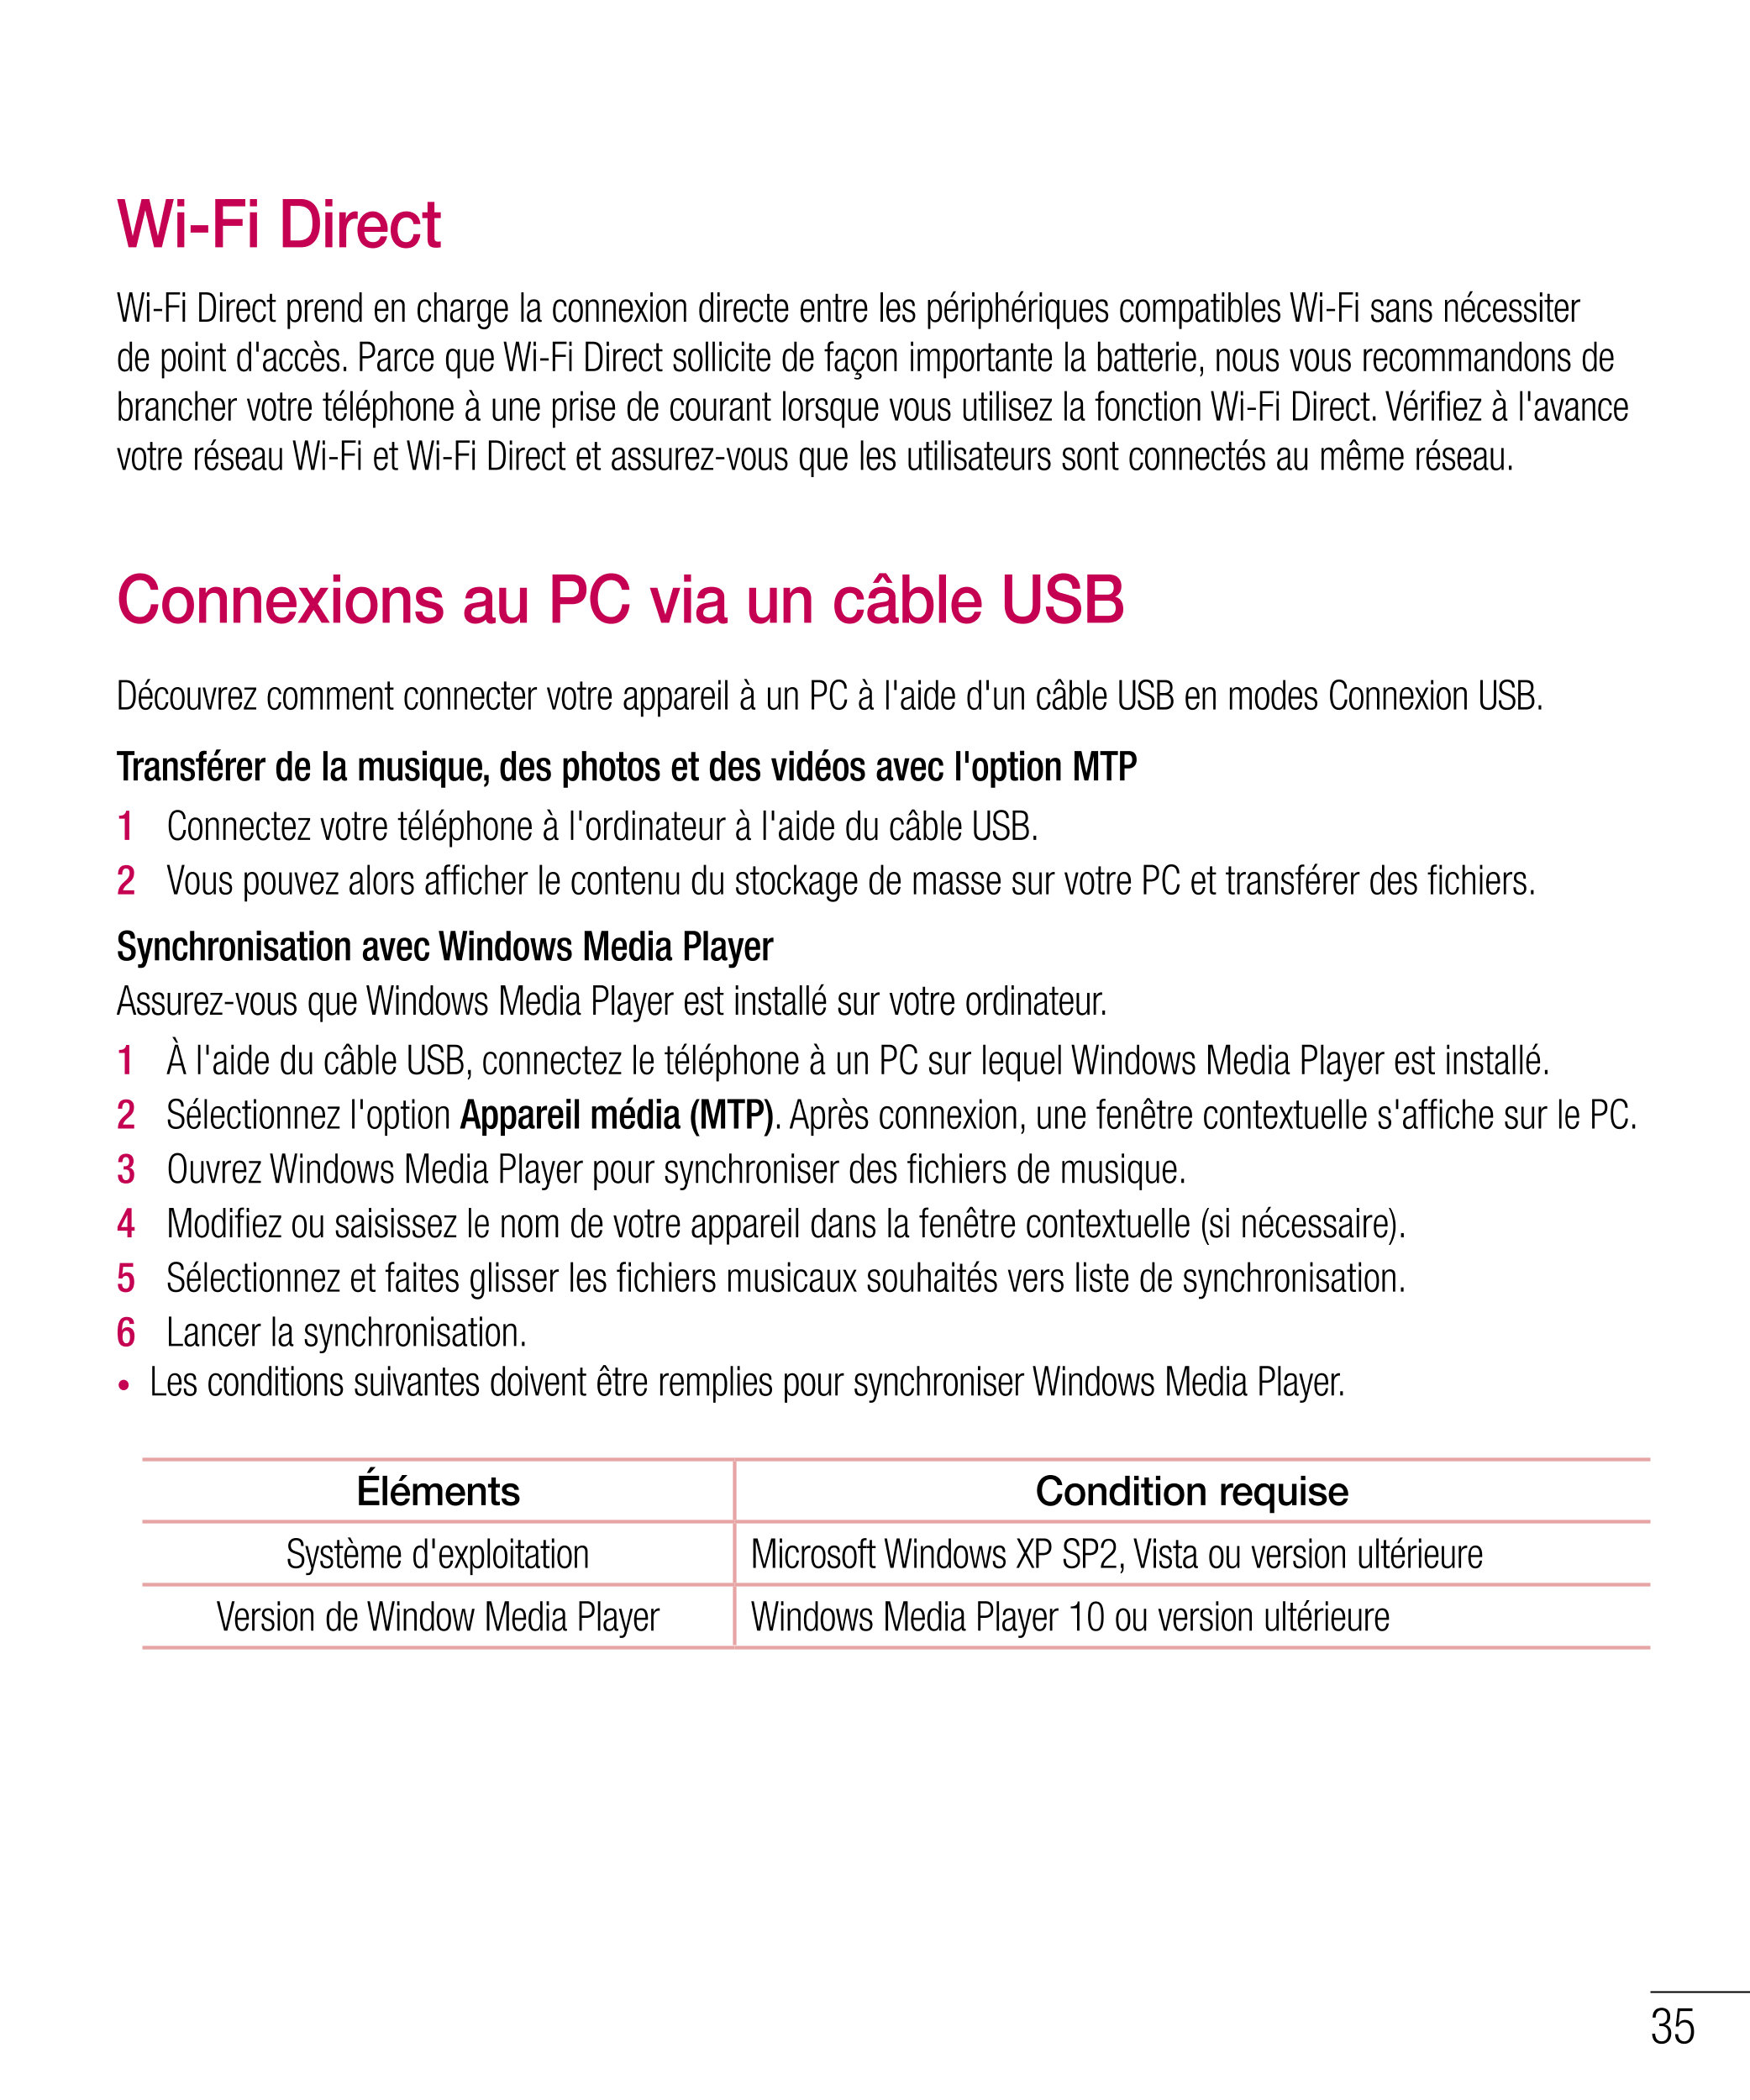 Wi-Fi Direct
Wi-Fi Direct prend en charge la connexion directe entre les périphériques compatibles Wi-Fi sans nécessiter 
de poi